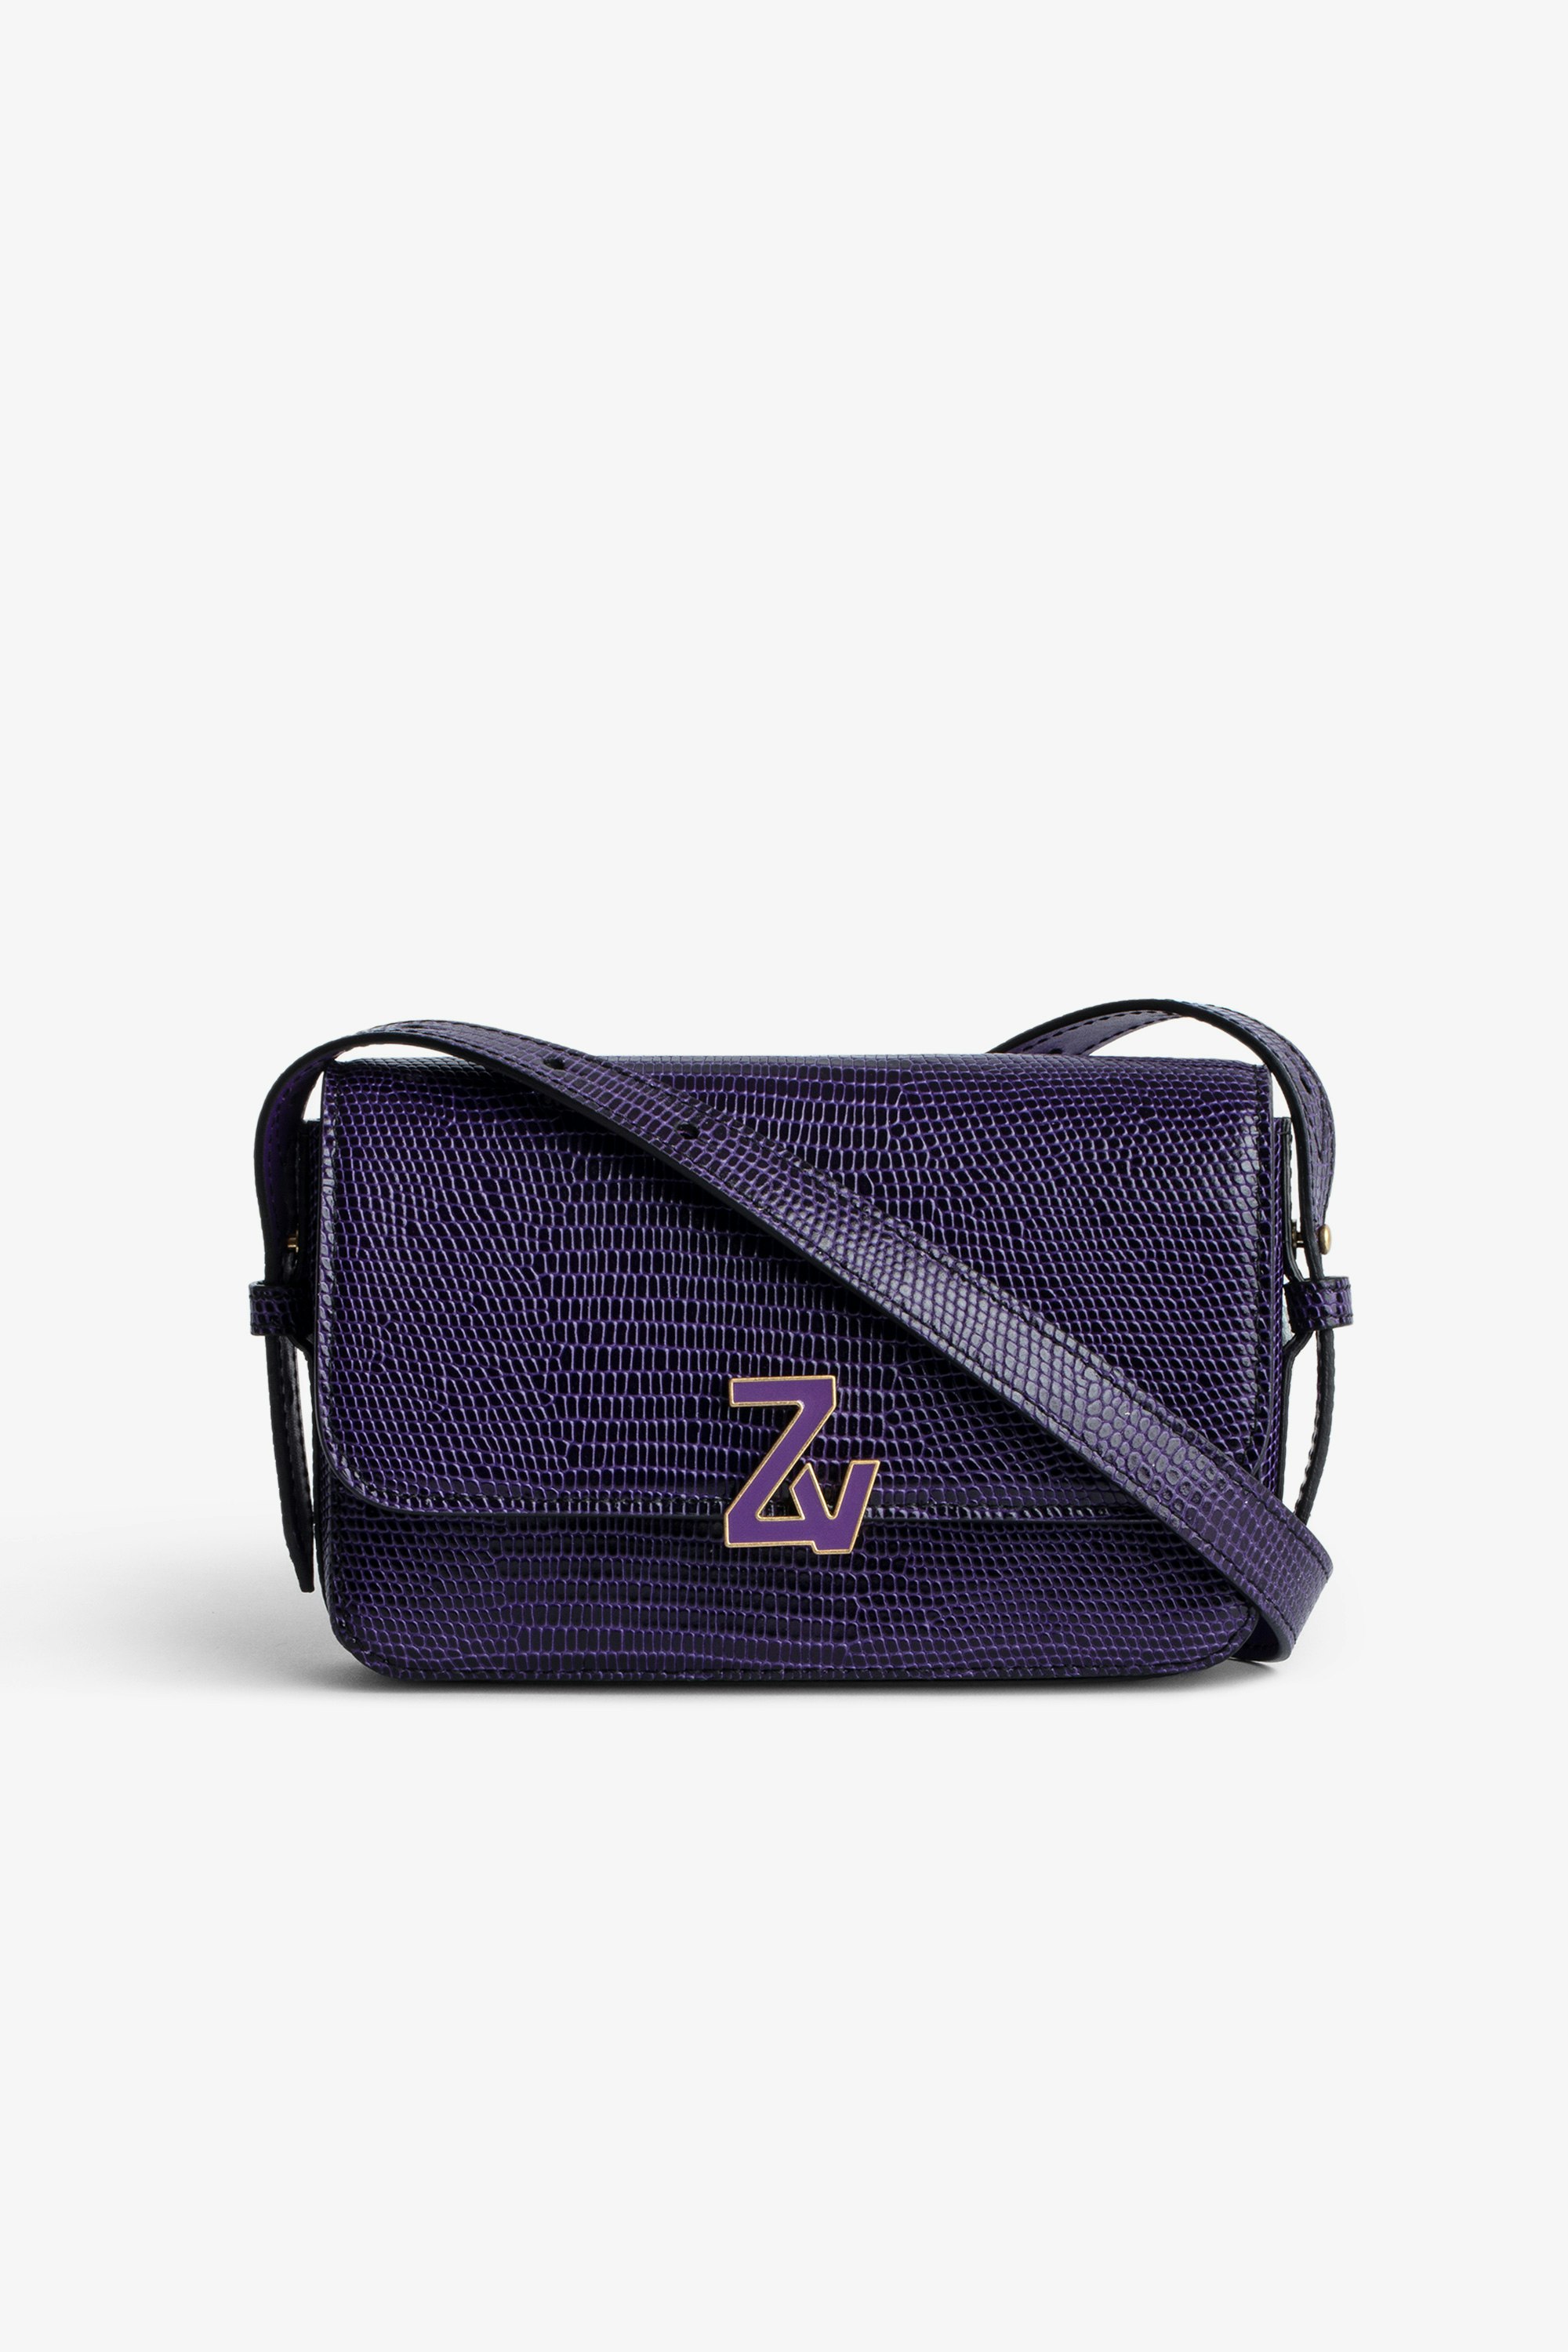 Tasche ZV Initiale Le Mini Damentasche ZV Initiale Le Mini aus lilafarbenem geprägtem Leder mit Leguaneffekt mit Klappe und Schließe und Schulterriemen